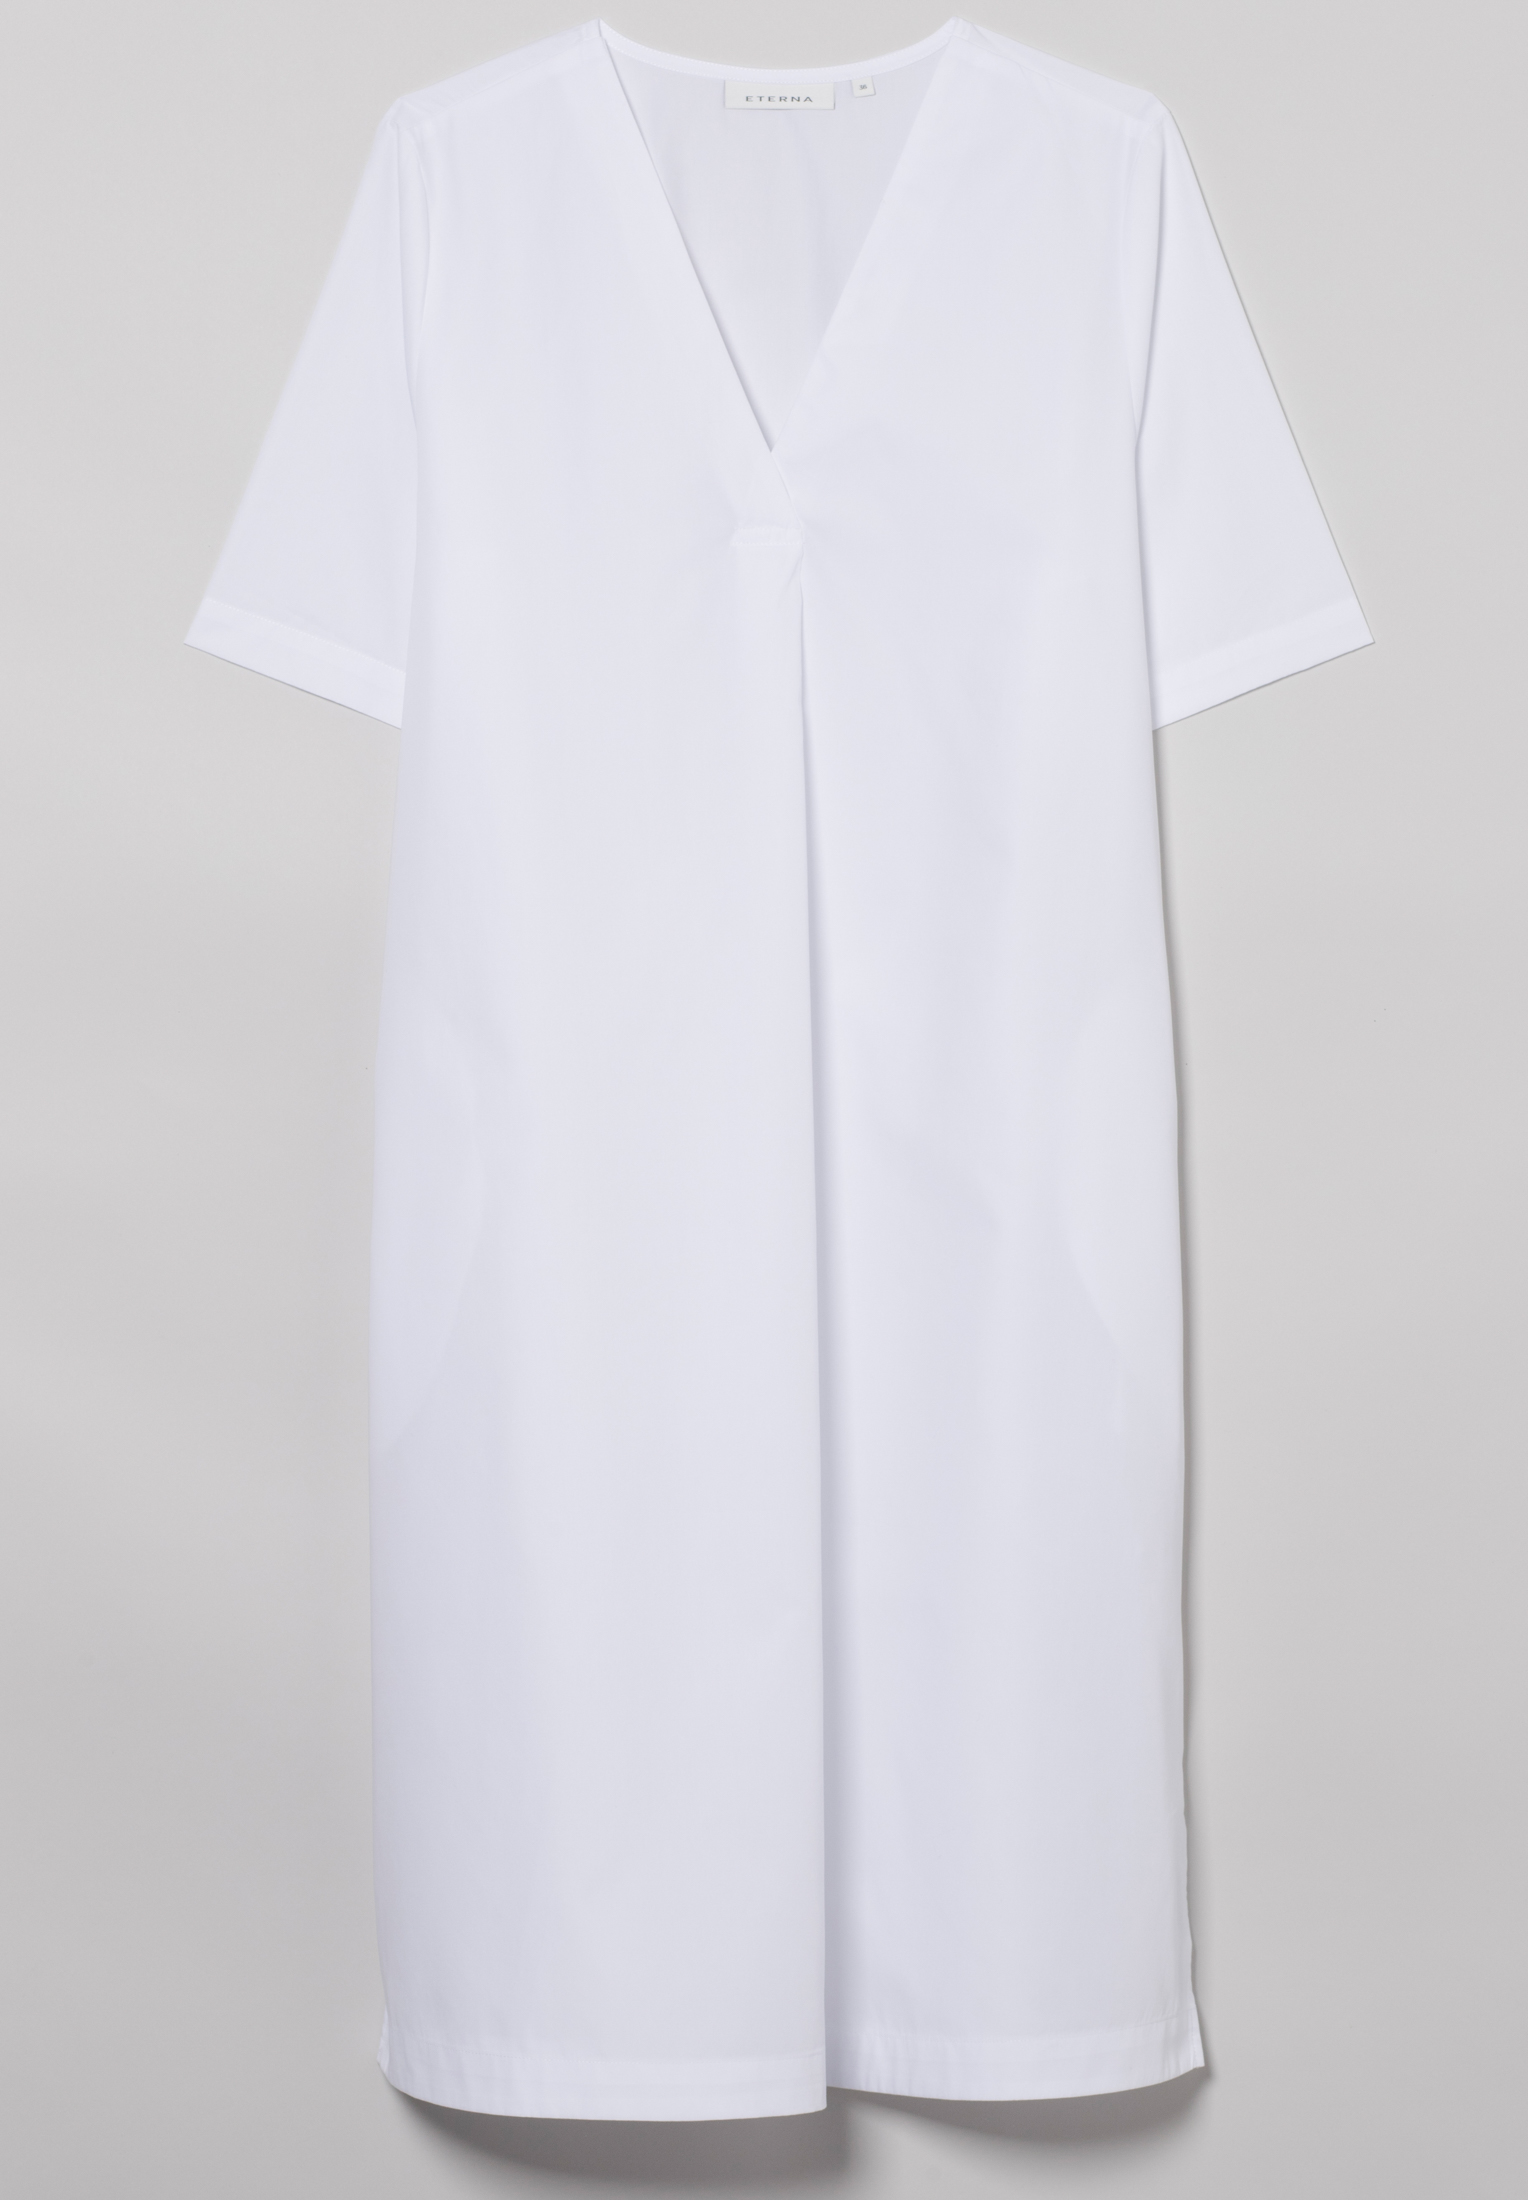 Blusenkleid in weiß unifarben | | weiß 2DR00211-00-01-40-1/2 Kurzarm | | 40